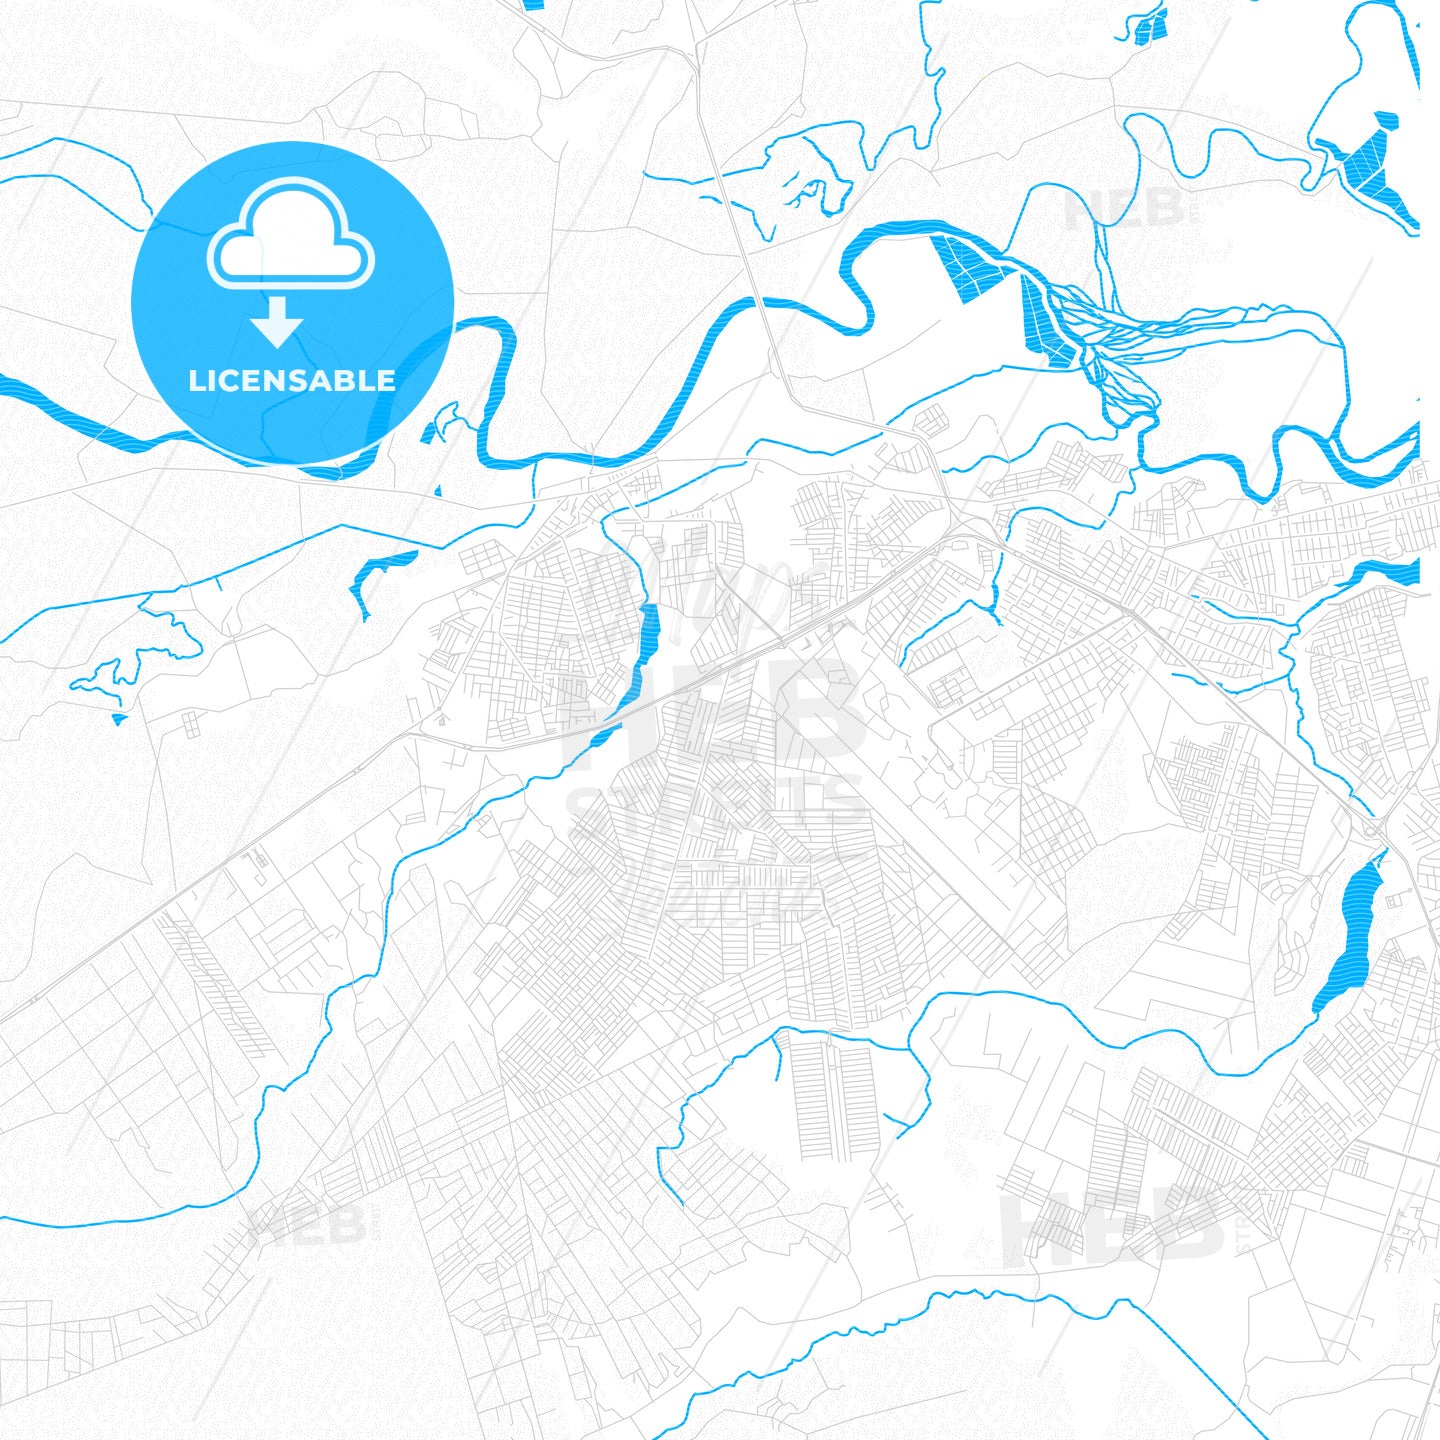 Santa Rita, Brazil PDF vector map with water in focus